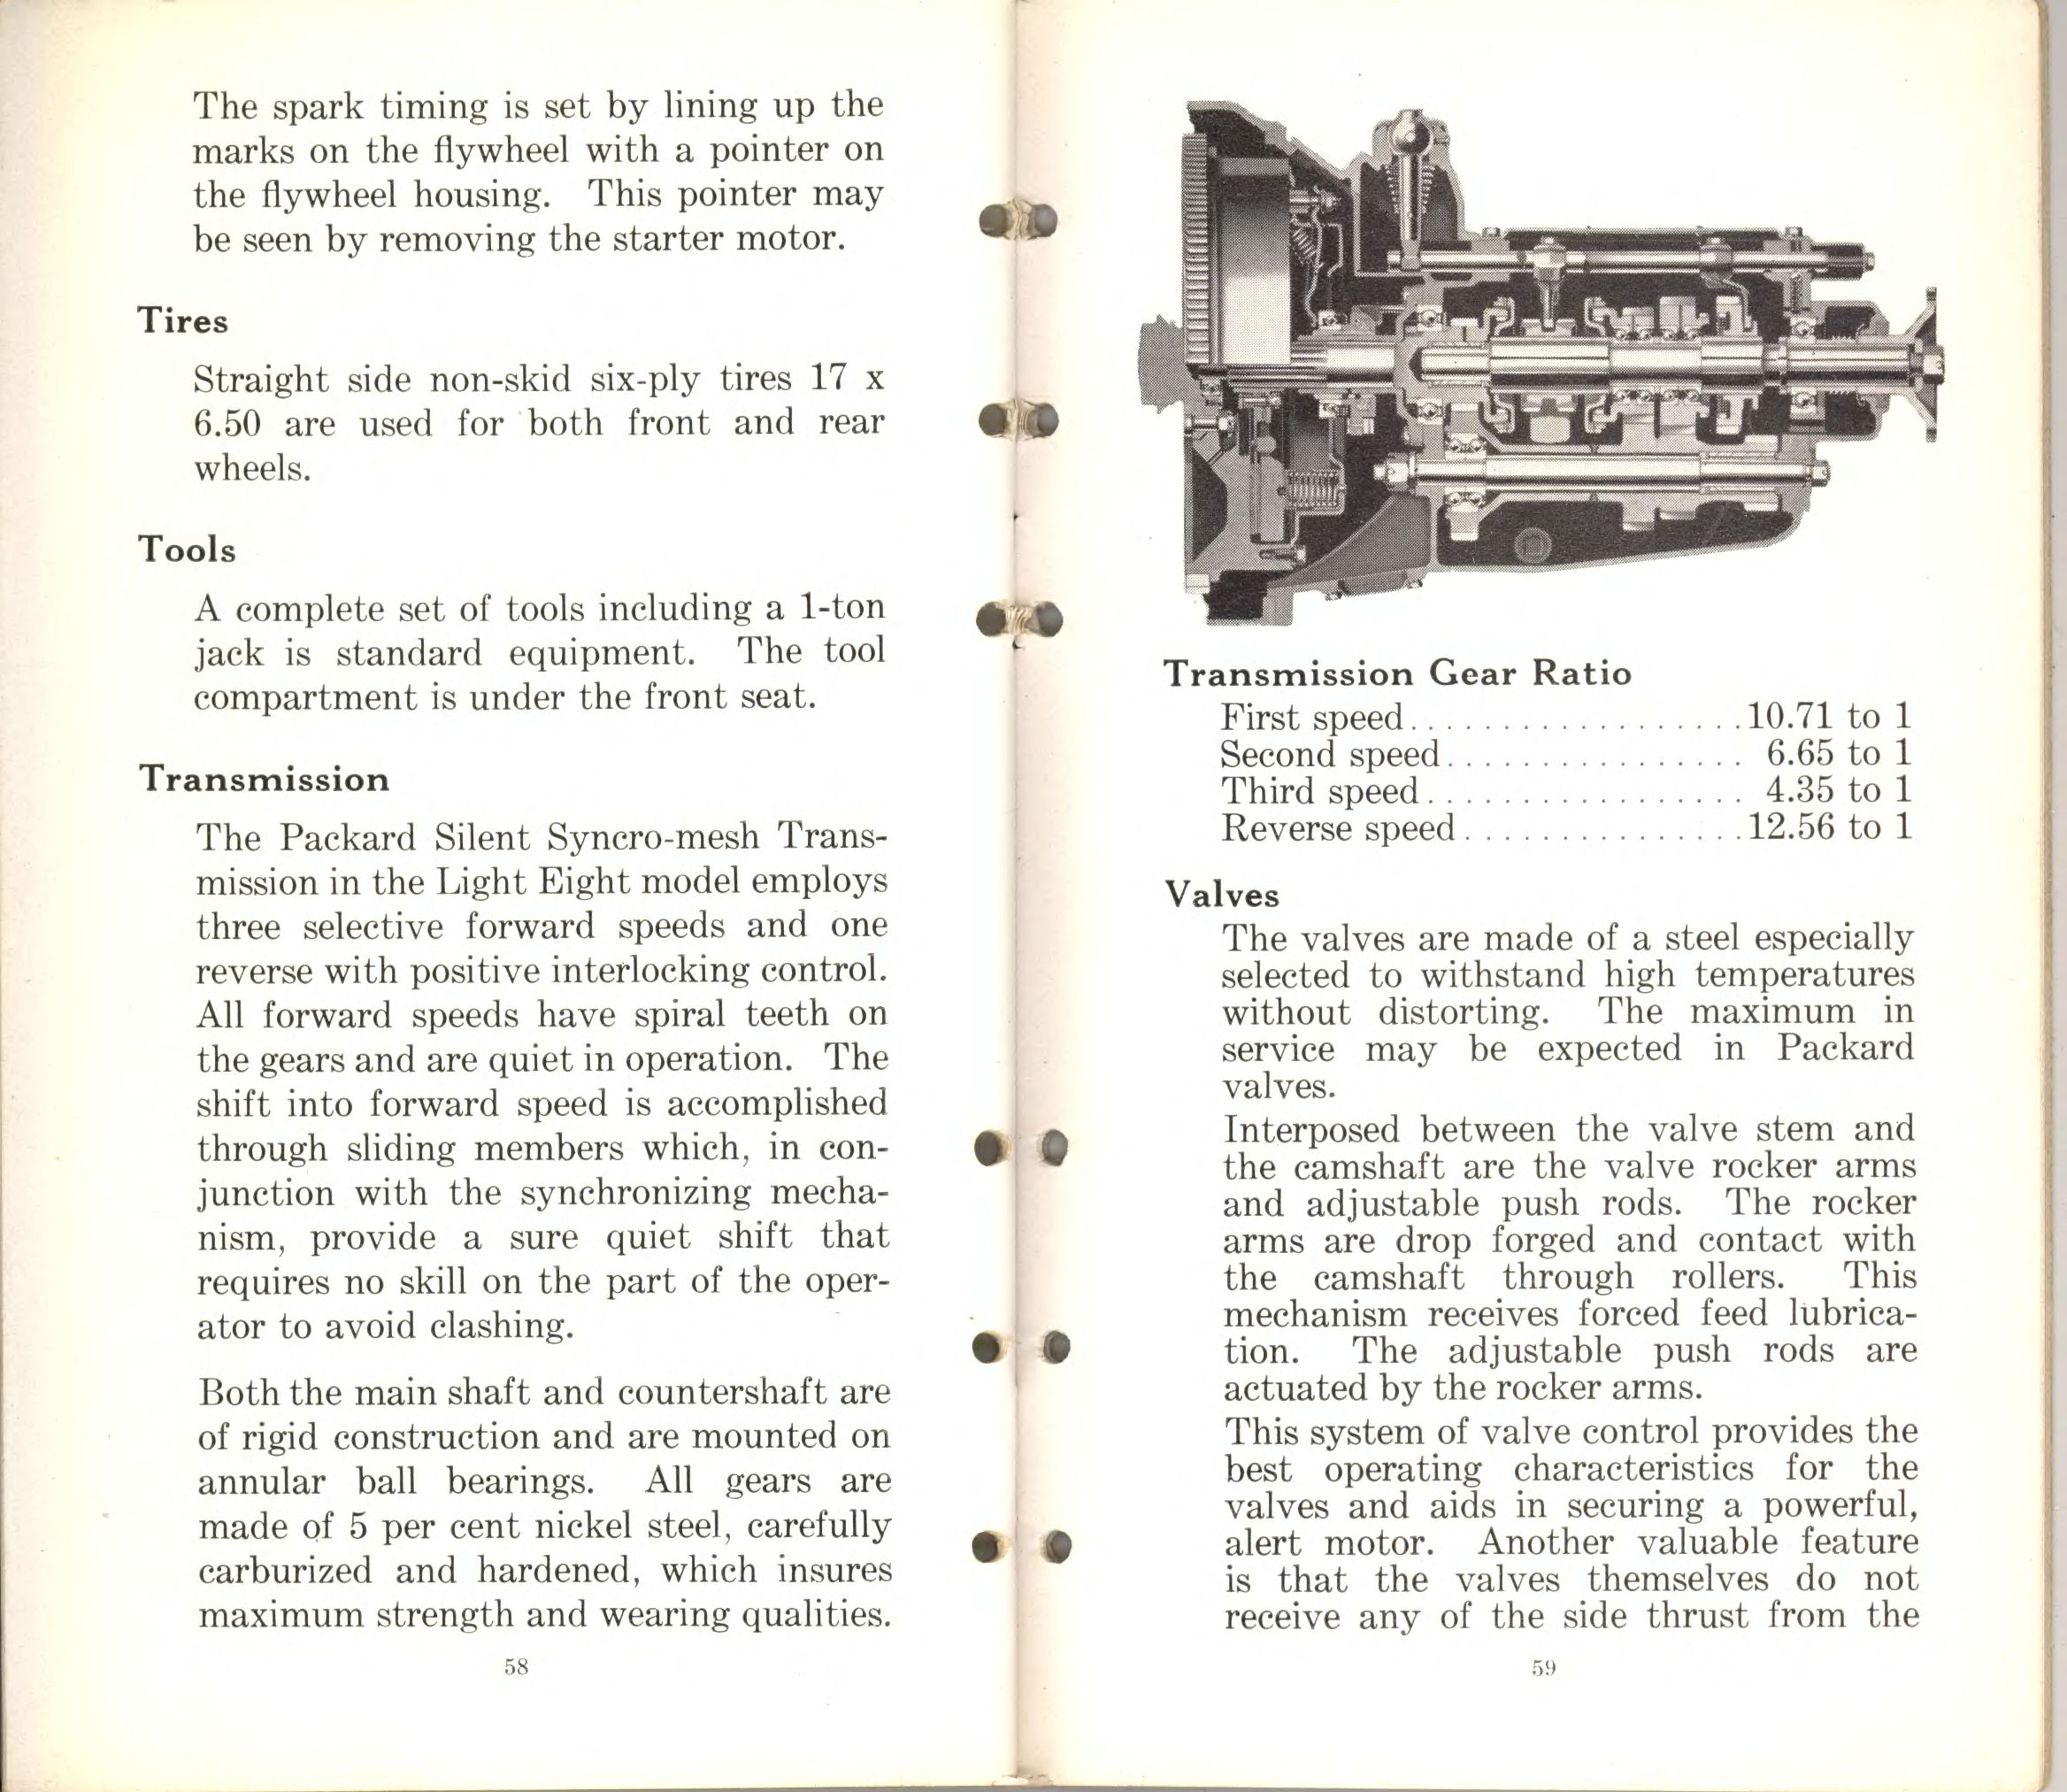 1932 Packard Data Book-58-59